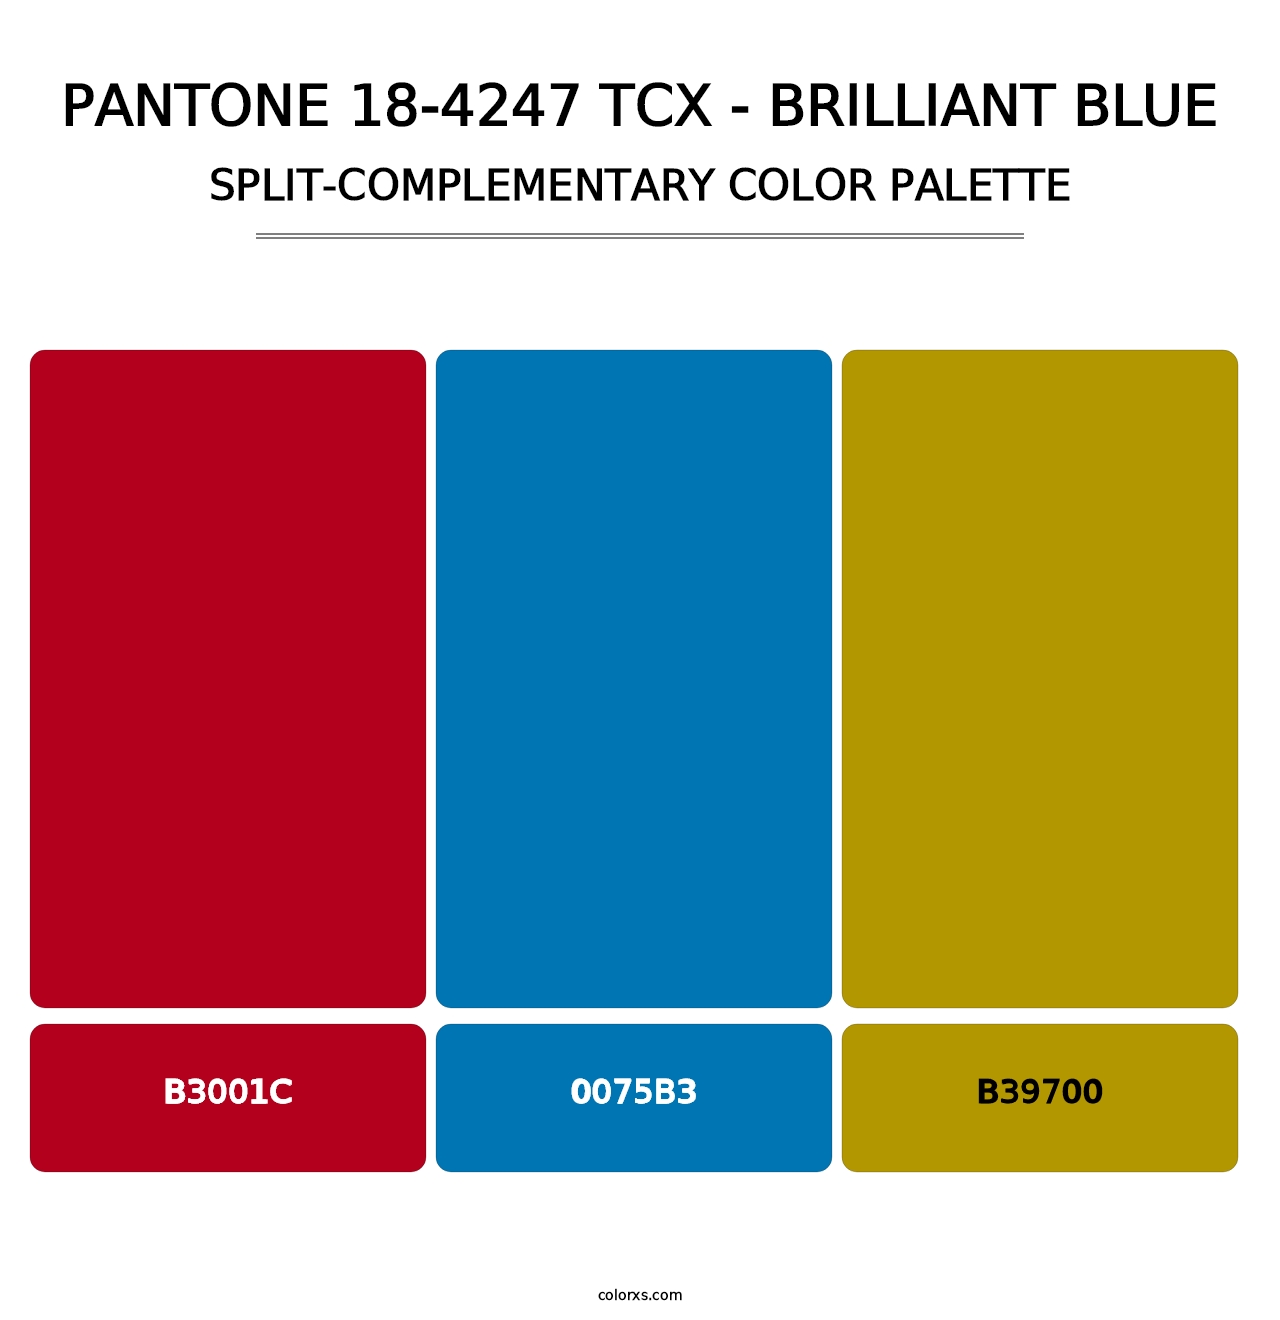 PANTONE 18-4247 TCX - Brilliant Blue - Split-Complementary Color Palette